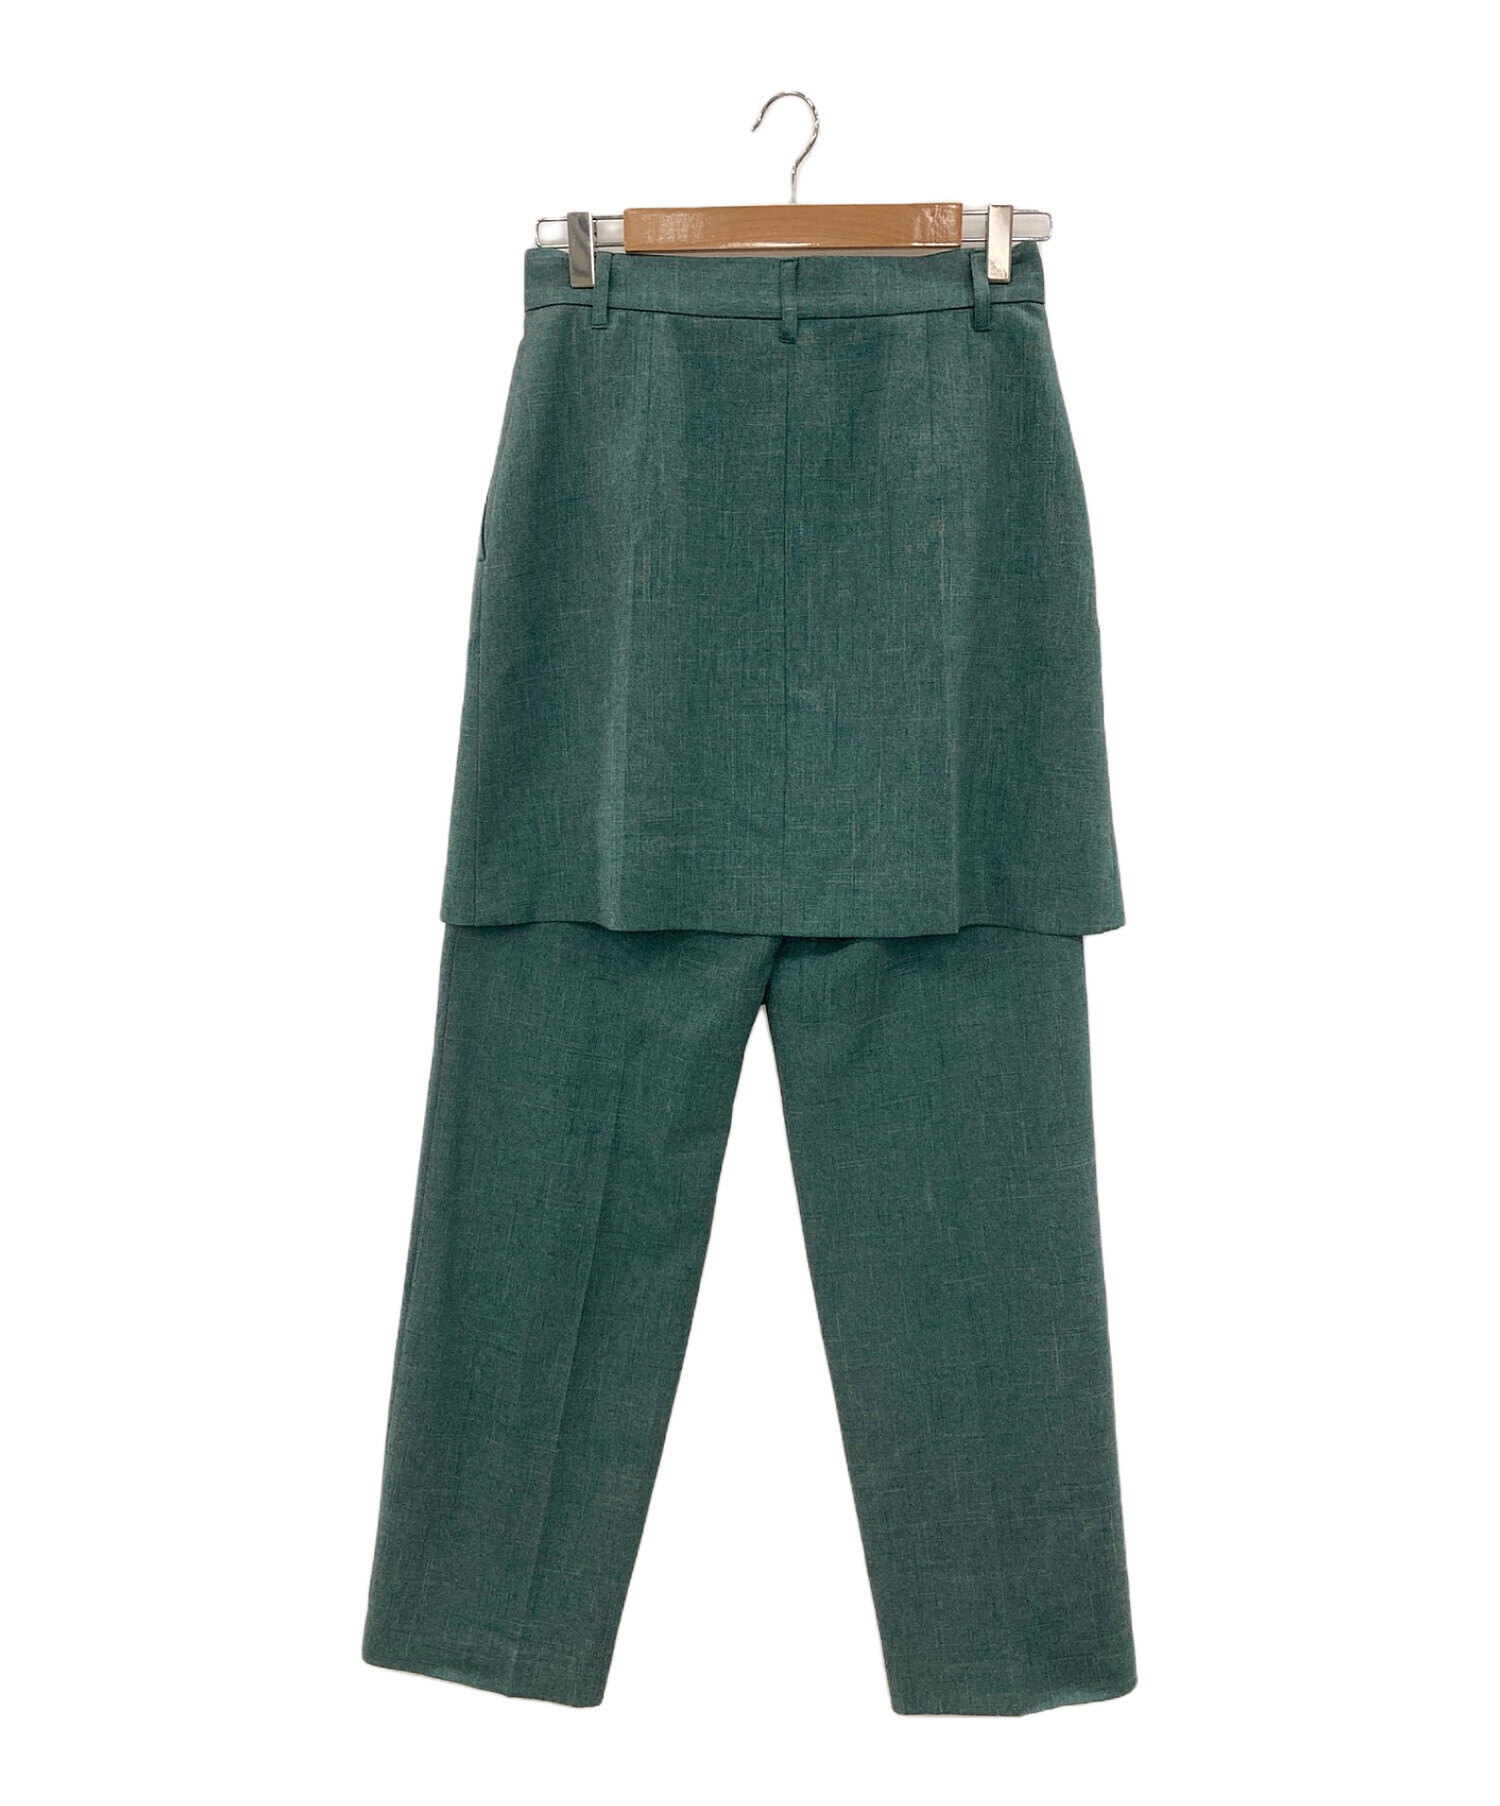 LE CIEL BLEU (ルシェルブルー) Layered Tailored Pants グリーン サイズ:36